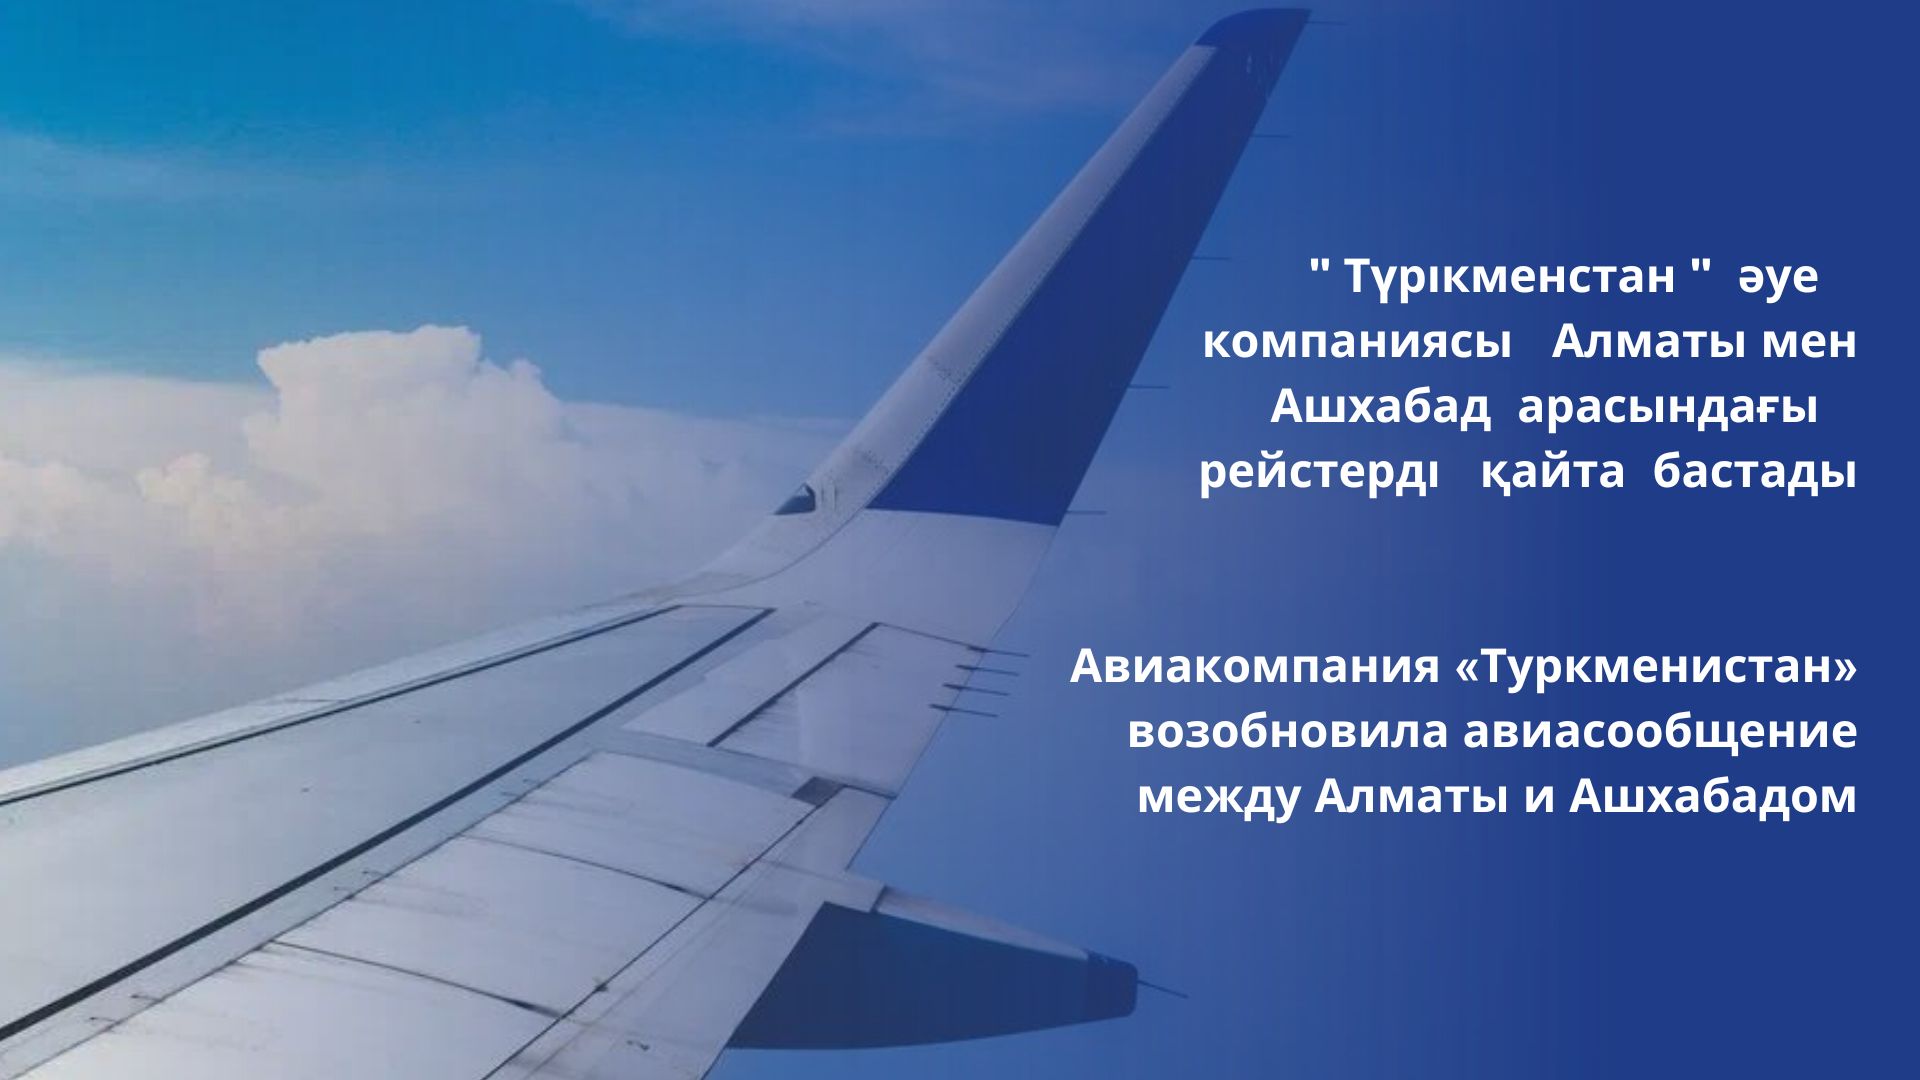 Авиакомпания «Туркменистан» возобновила авиасообщение между Алматы и Ашхабадом